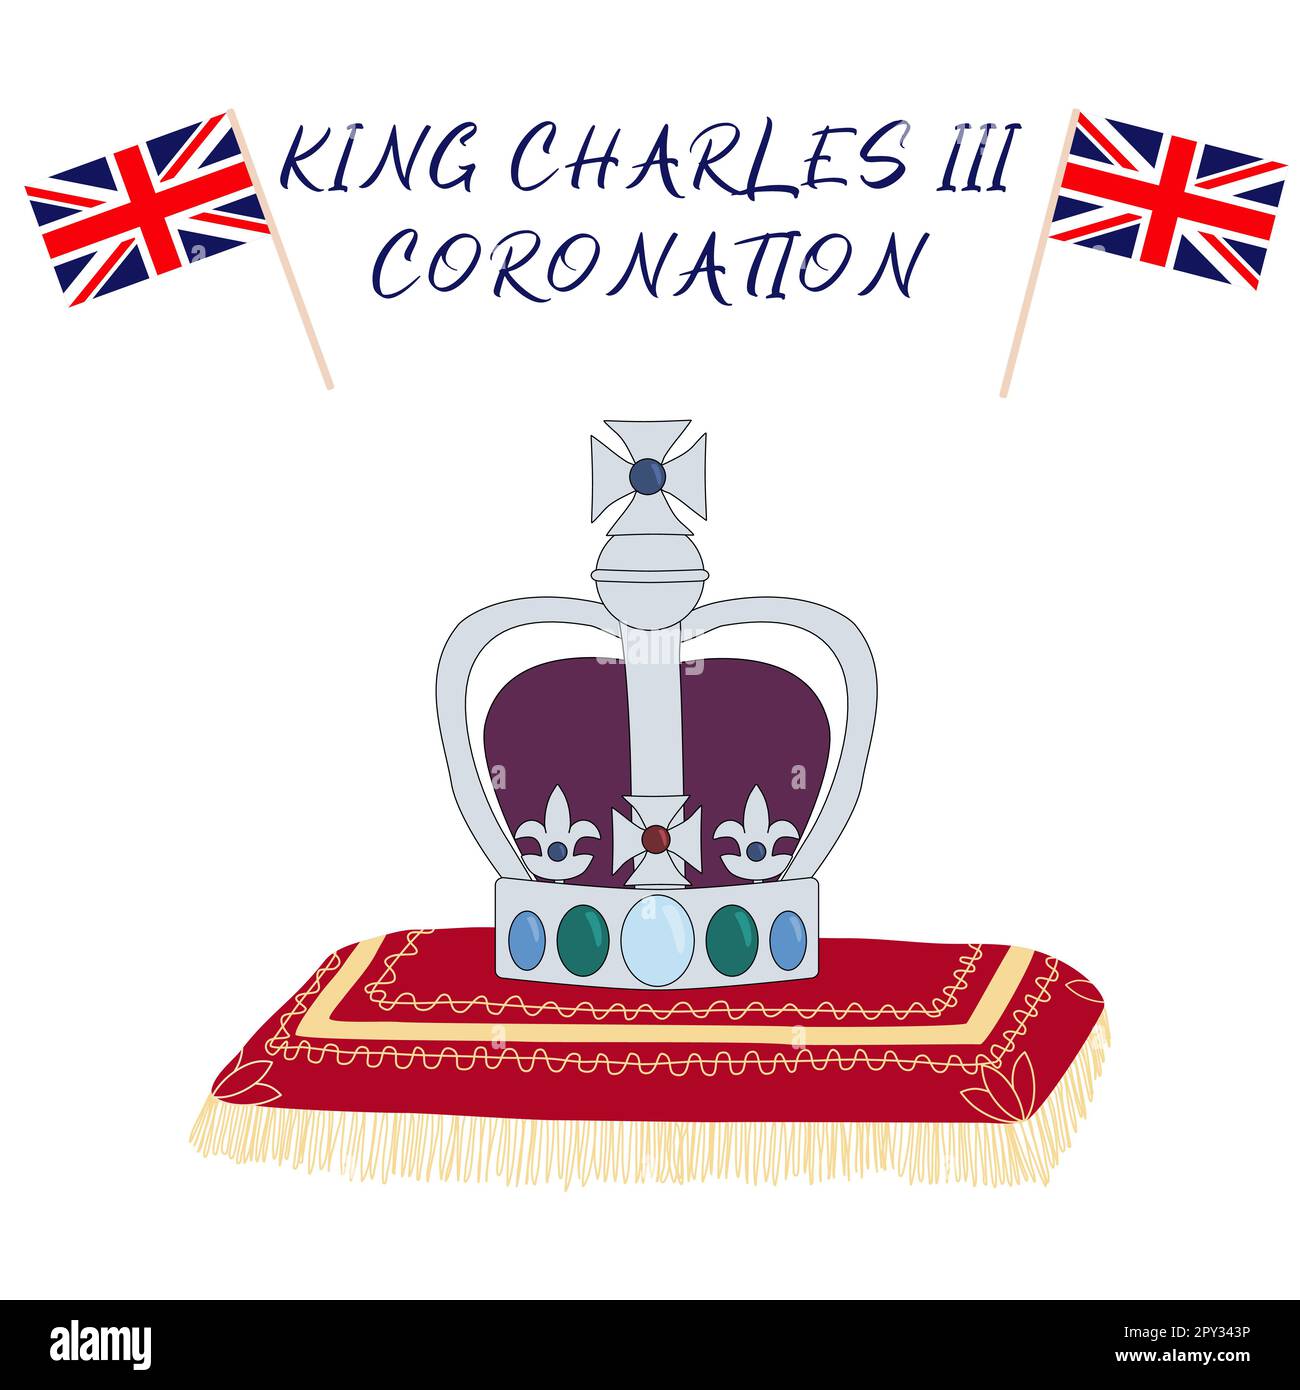 Affiche pour le couronnement du roi Charles III avec drapeaux britanniques et couronne sur l'oreiller, carte de voeux pour célébrer un couronnement du prince Charles de Galles devient roi d'Angleterre, illustration vectorielle Illustration de Vecteur